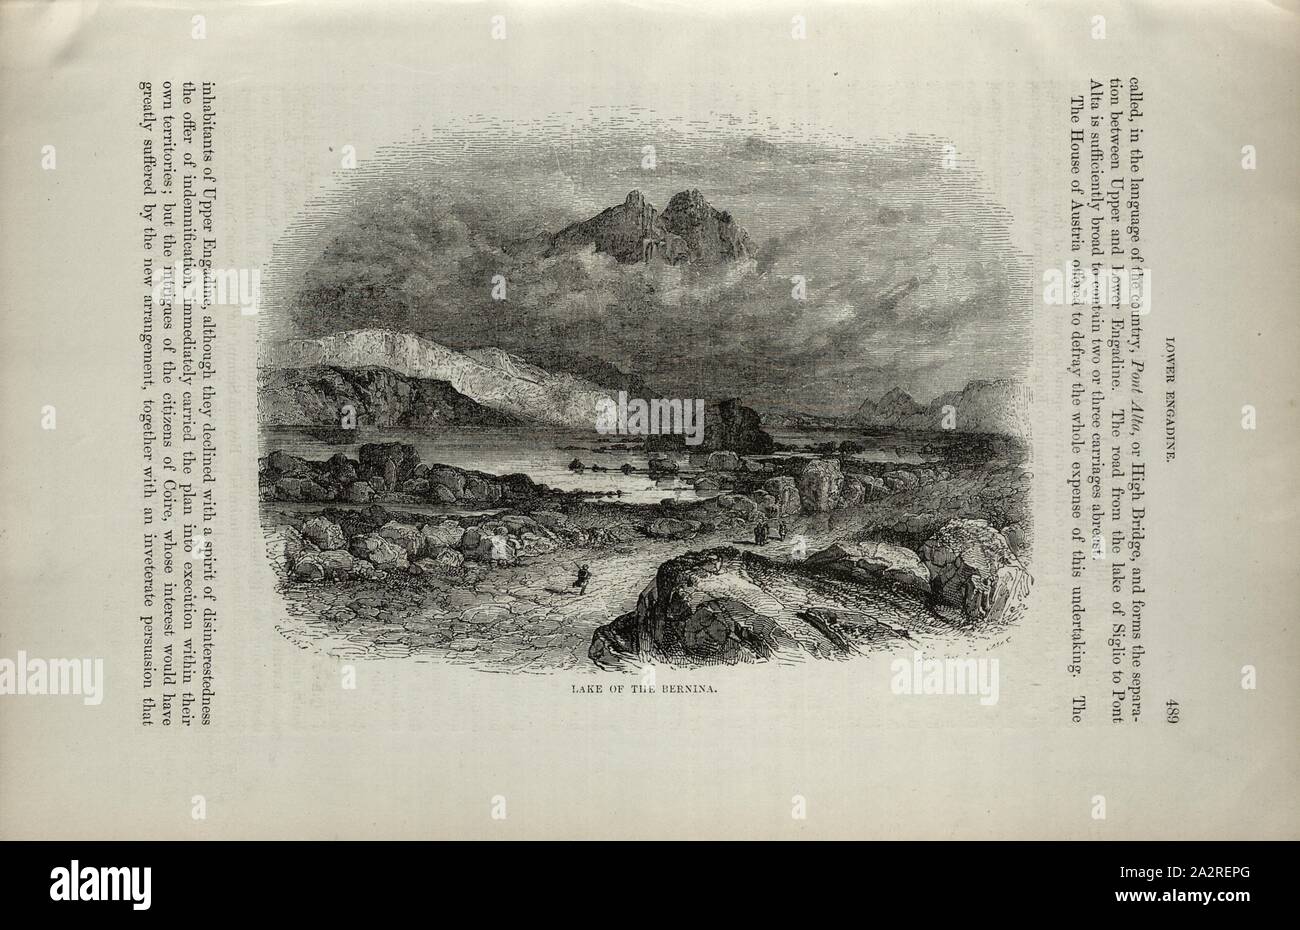 Il lago del Bernina, il lago sul Passo del Bernina, p. 489, 1854, Charles Williams, Alpi, Svizzera e nord Italia. Londra: Cassell, 1854 Foto Stock